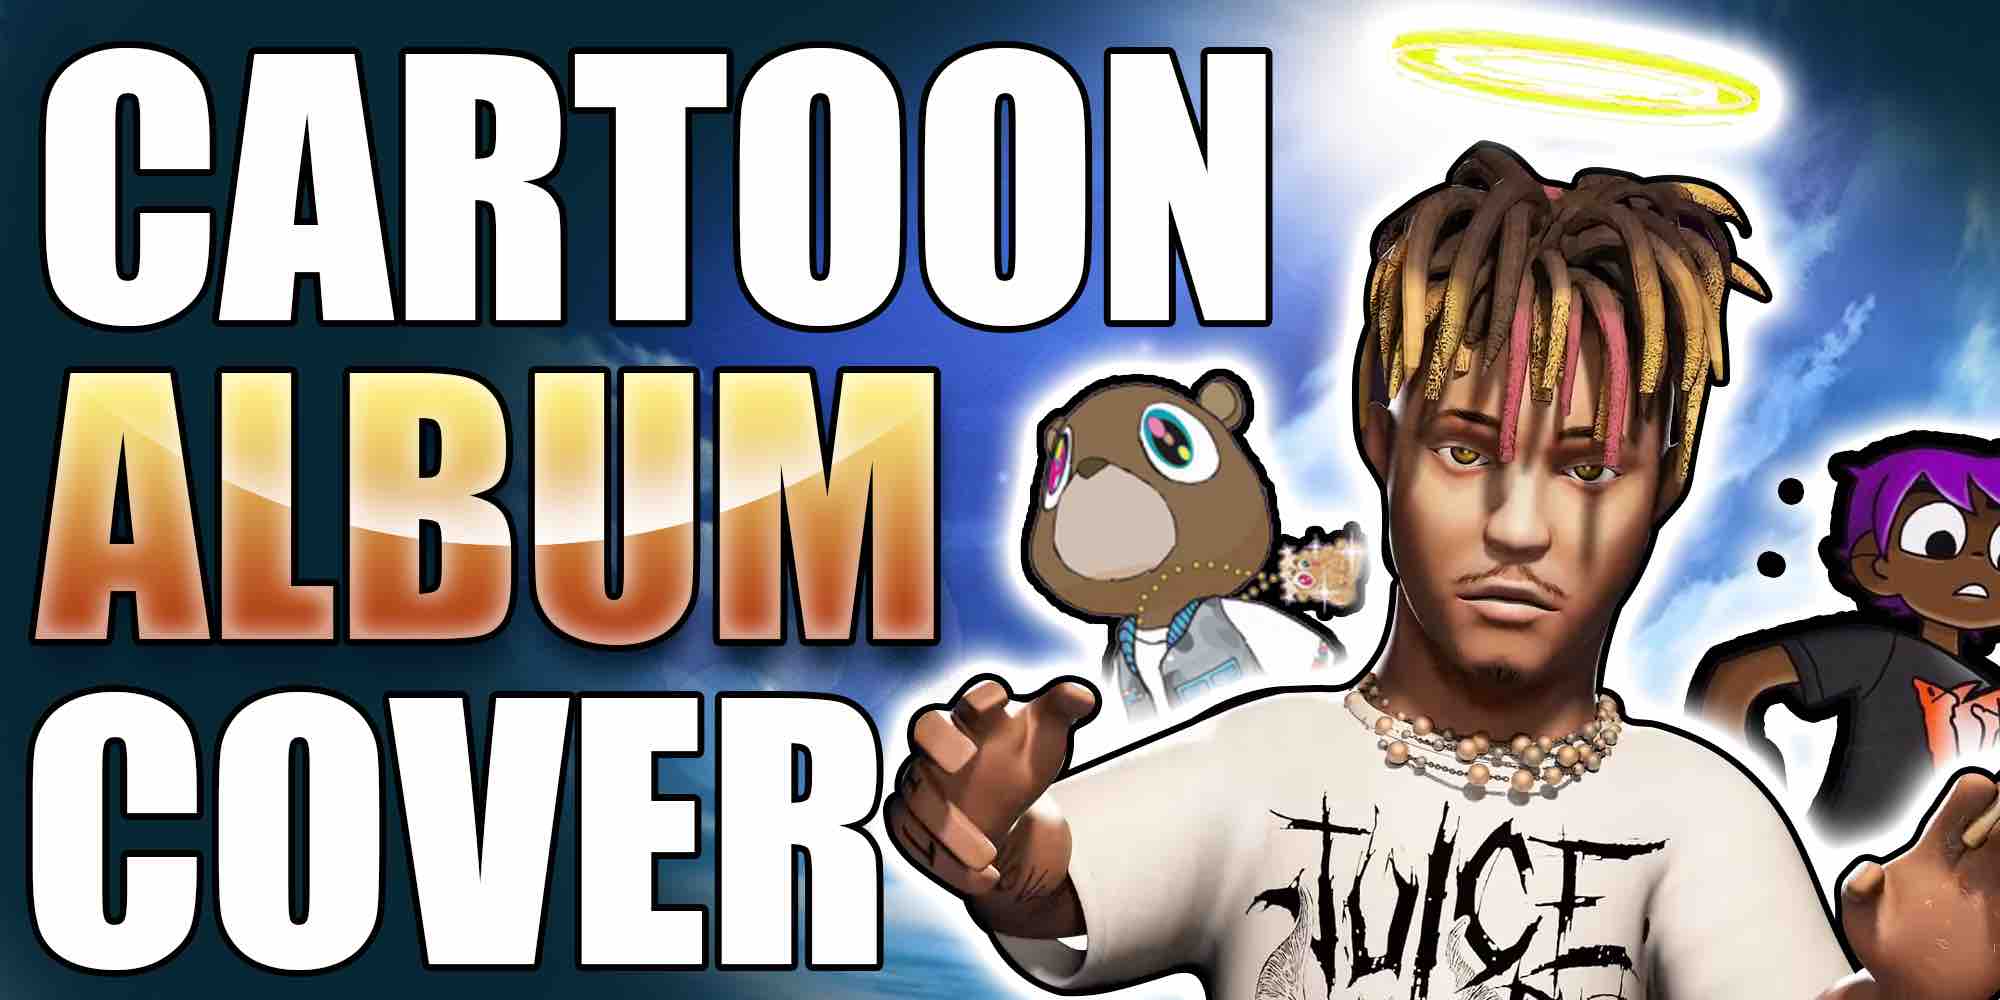 Top 10 Cartoon Rapper Album Cover Ideas!